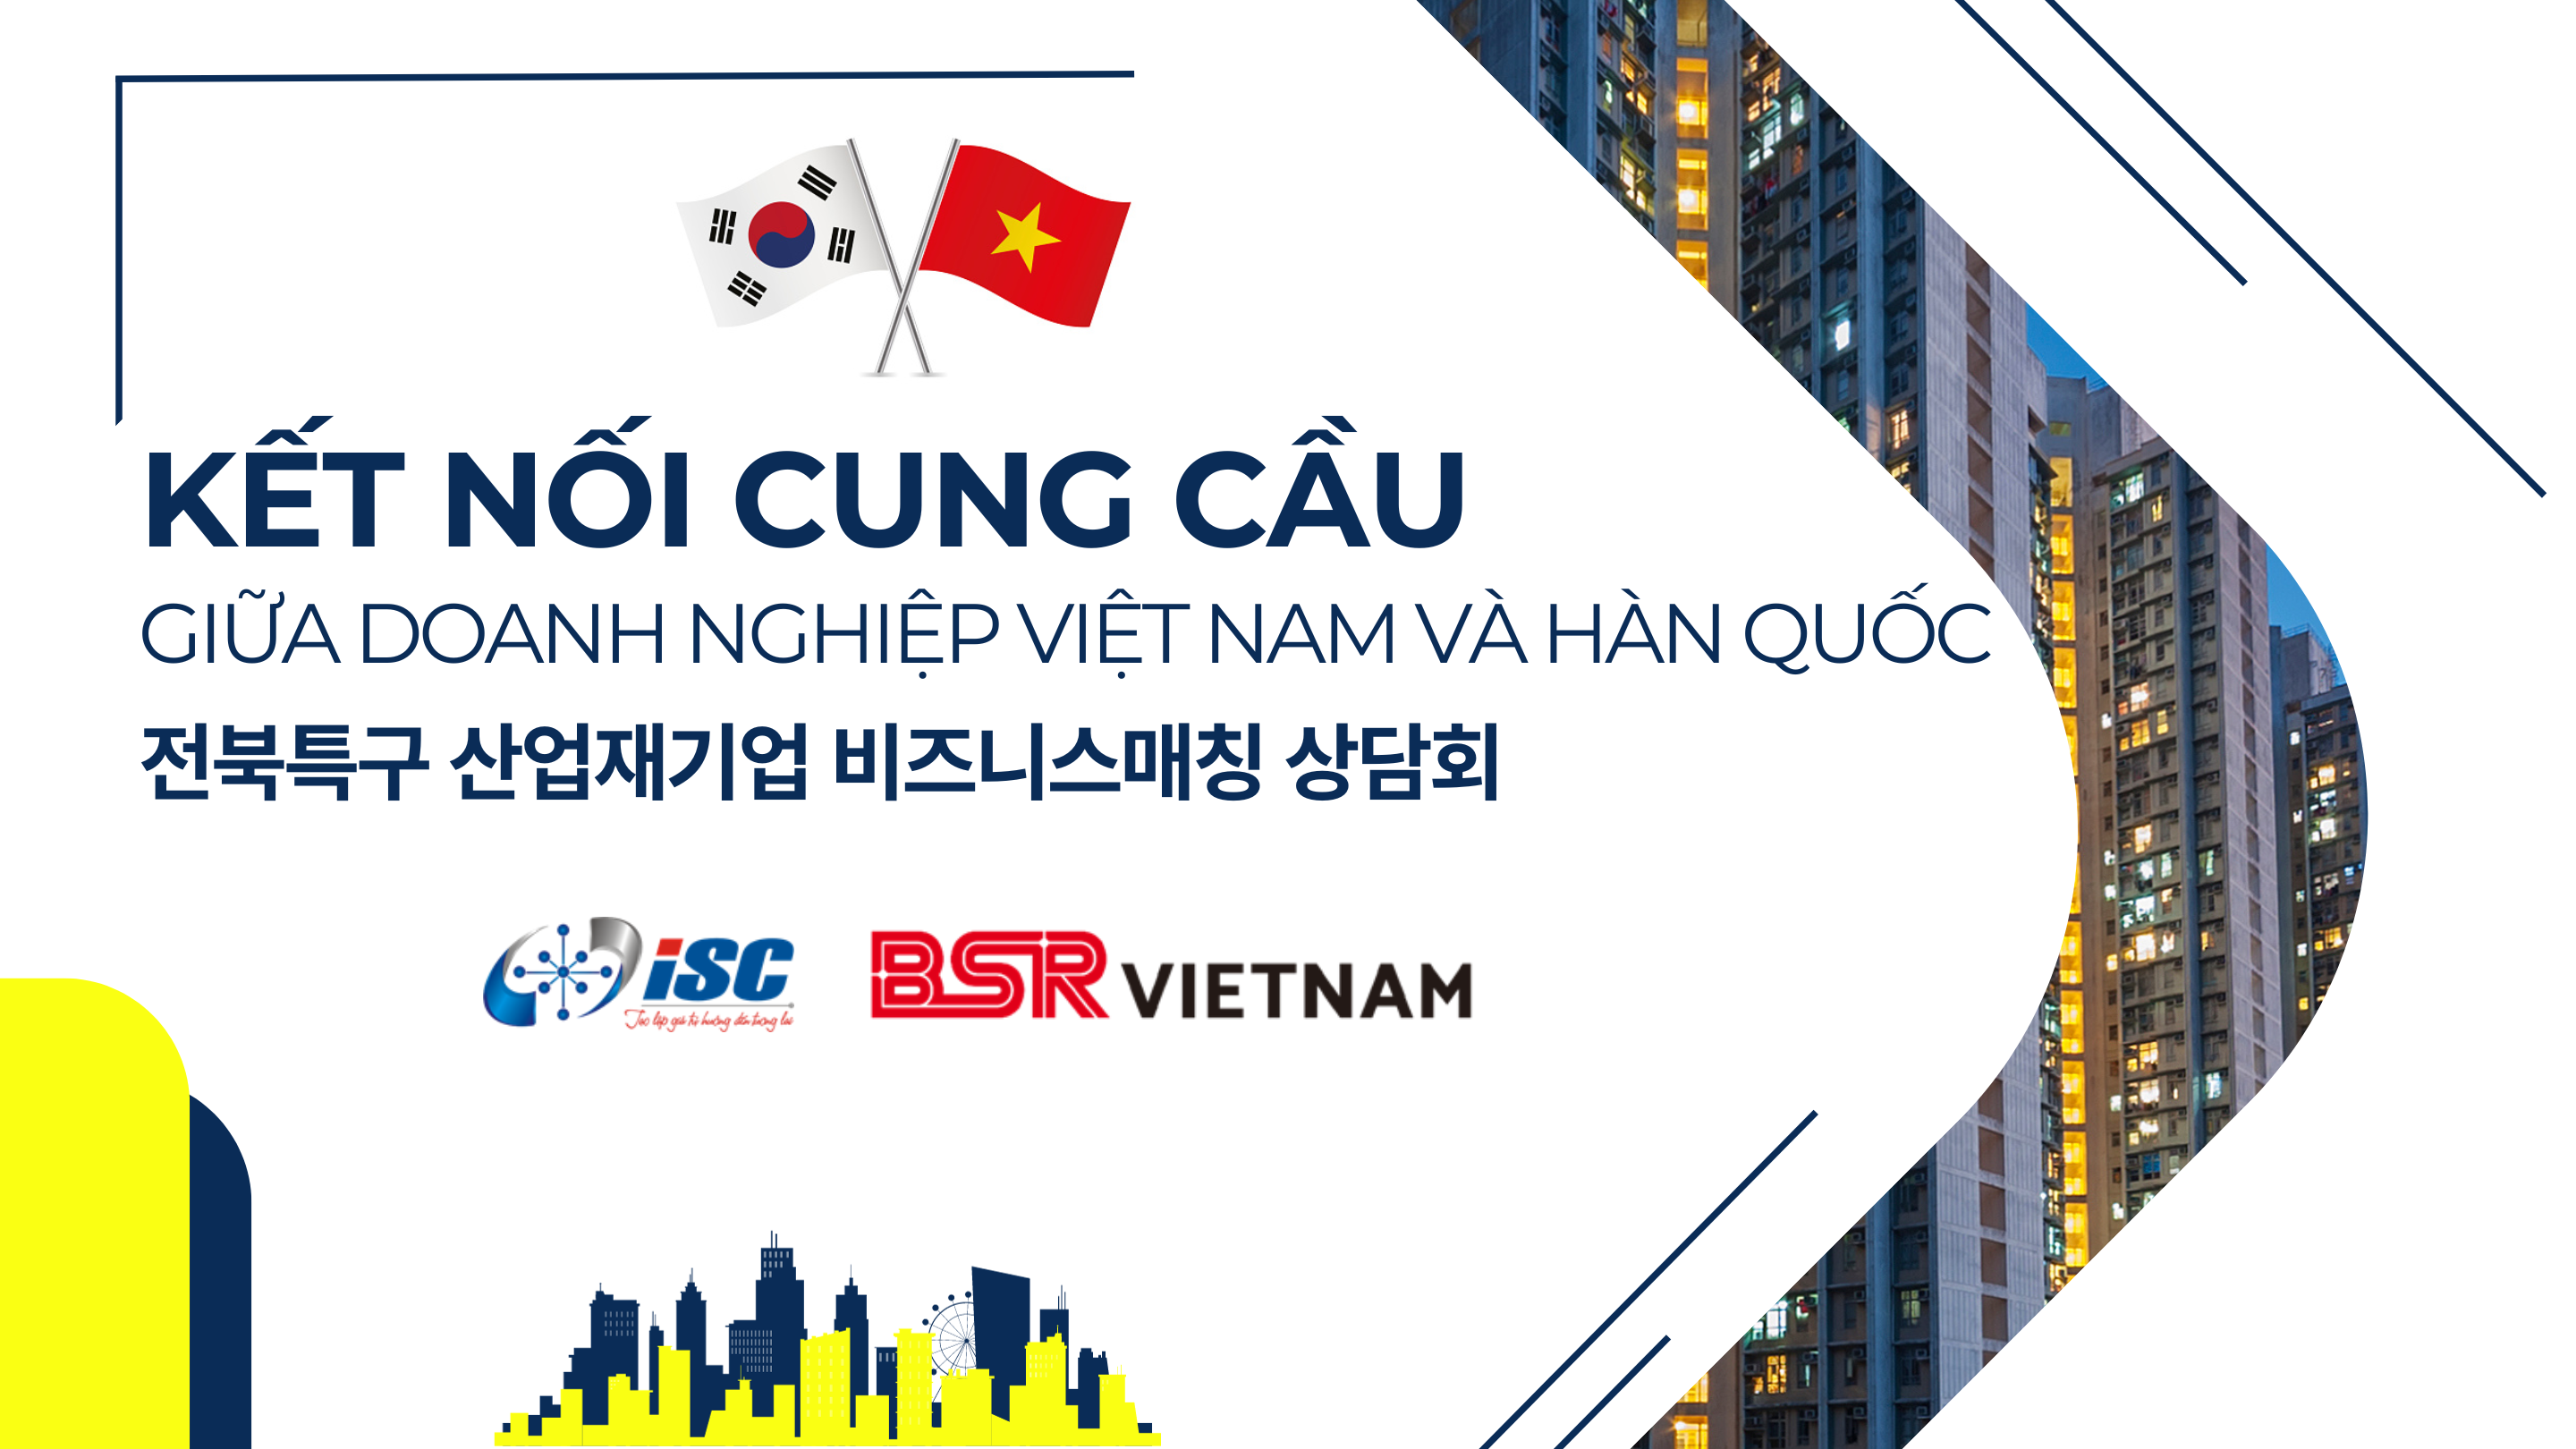 Sự kiện kết nối cung cầu công nghệ giữa các doanh nghiệp Việt Nam và doanh nghiệp Hàn Quốc